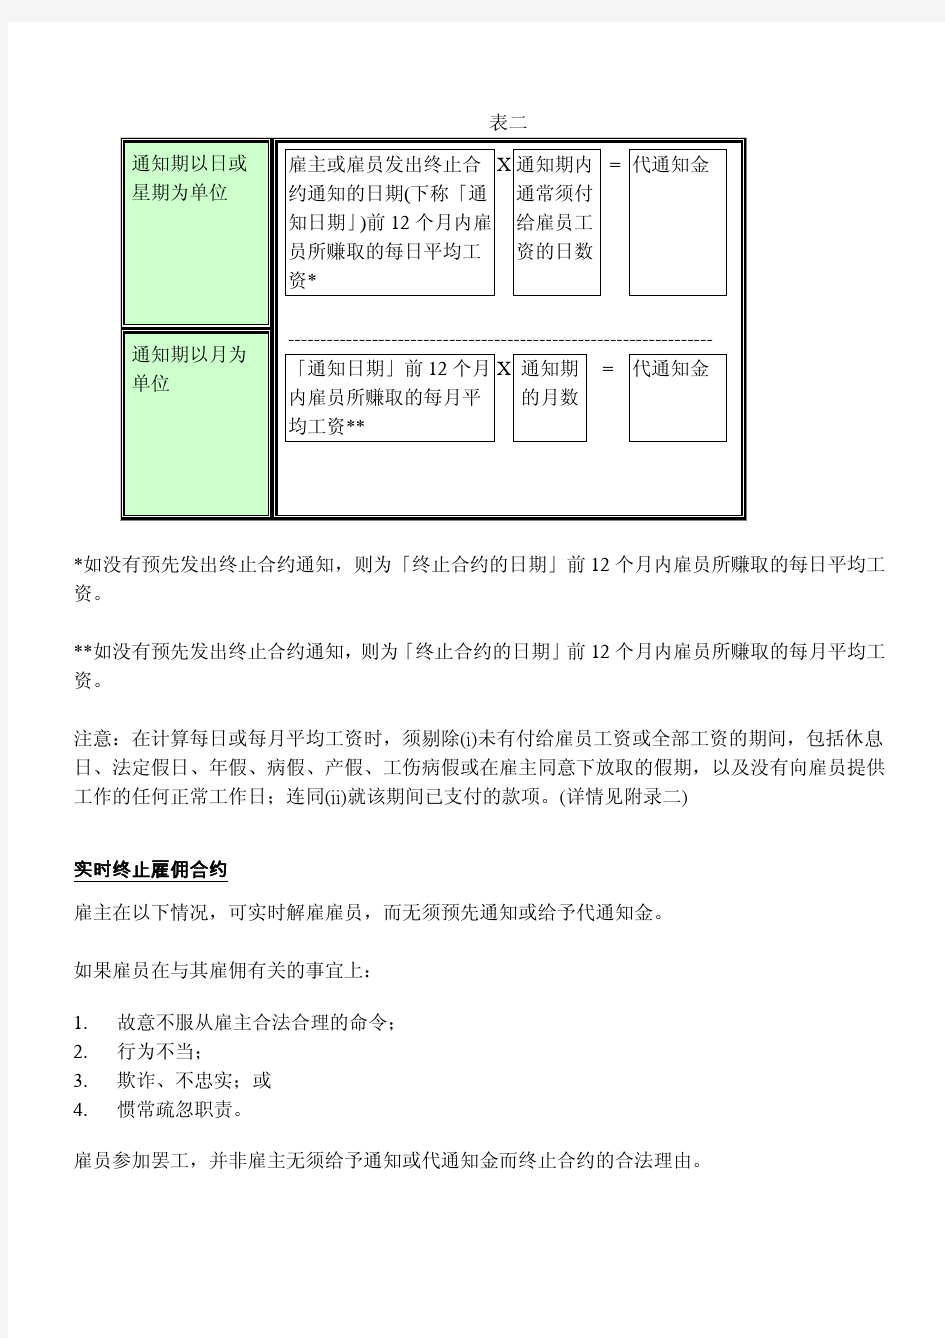 香港雇佣条例简明指南-08第八章：终止雇佣合约